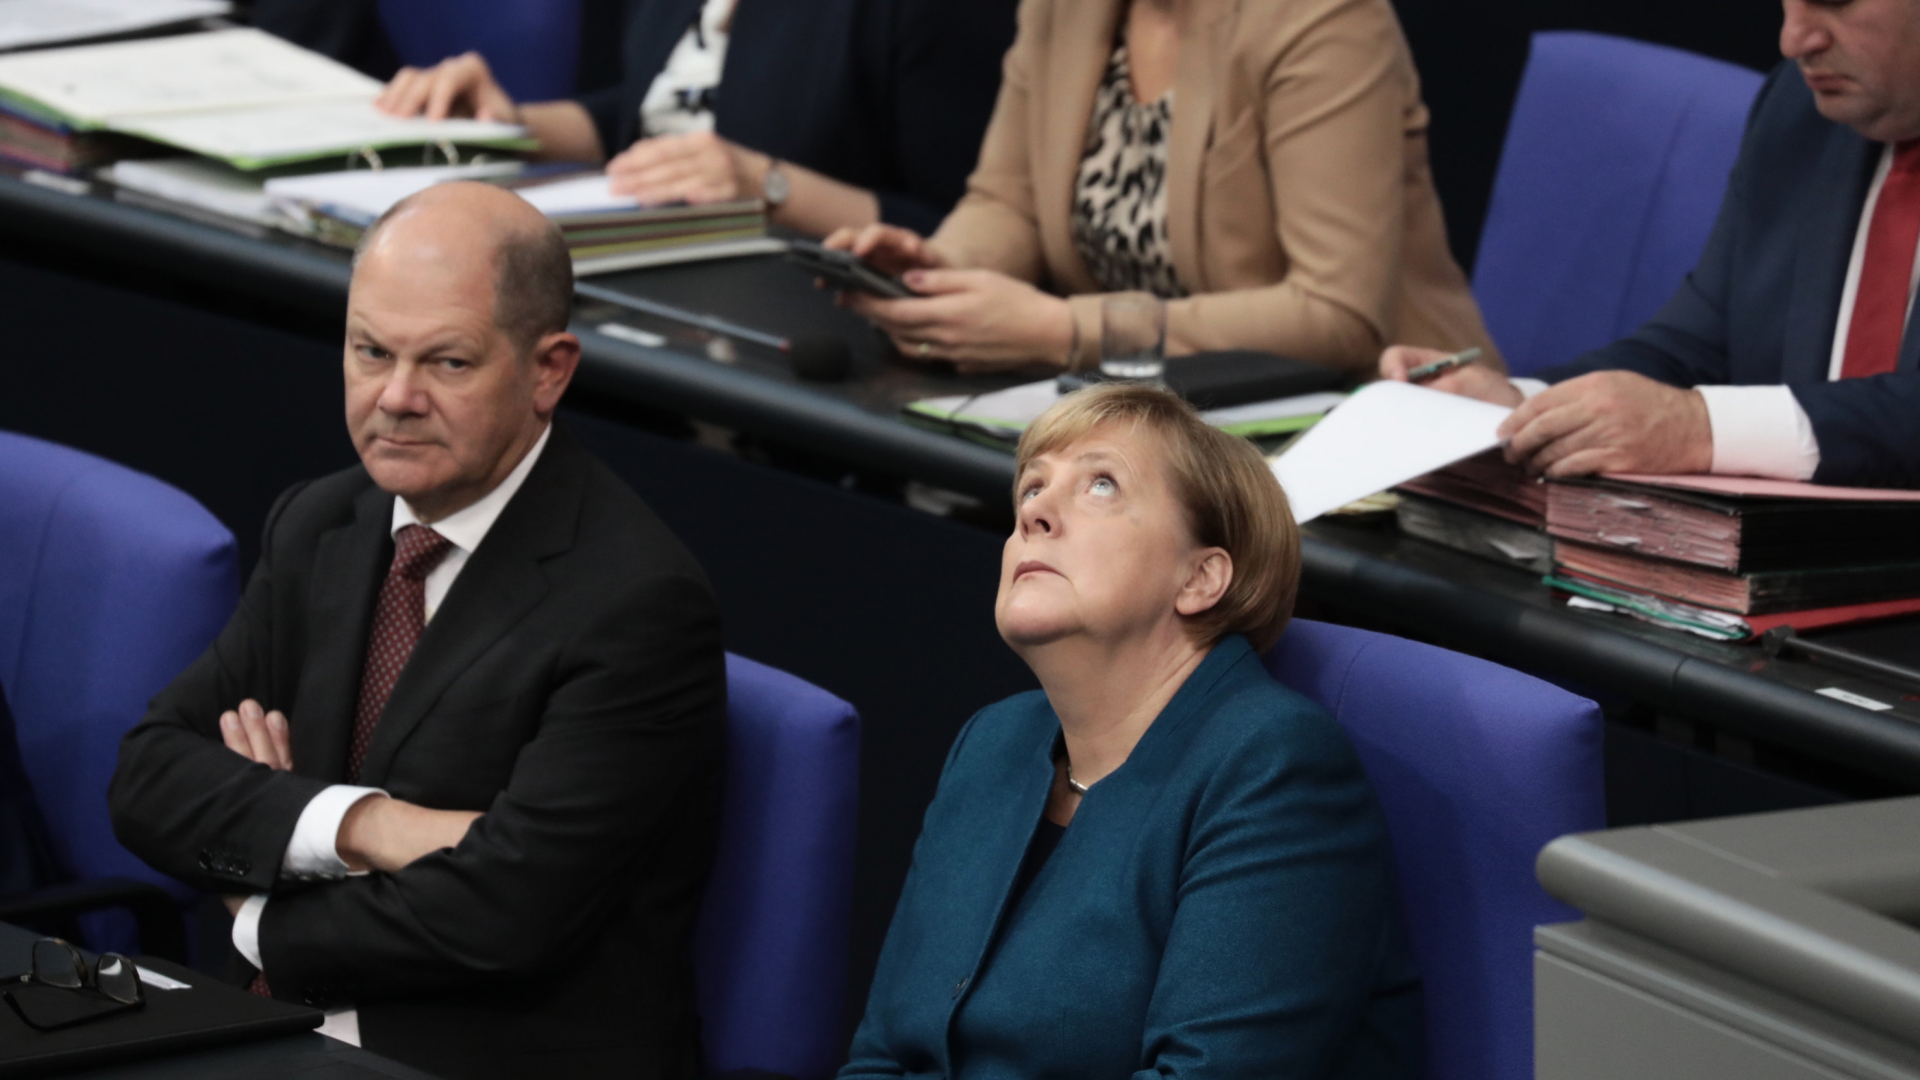 Finanzminister Scholz und Bundeskanzlerin Merkel auf der Regierungsbank. | dpa